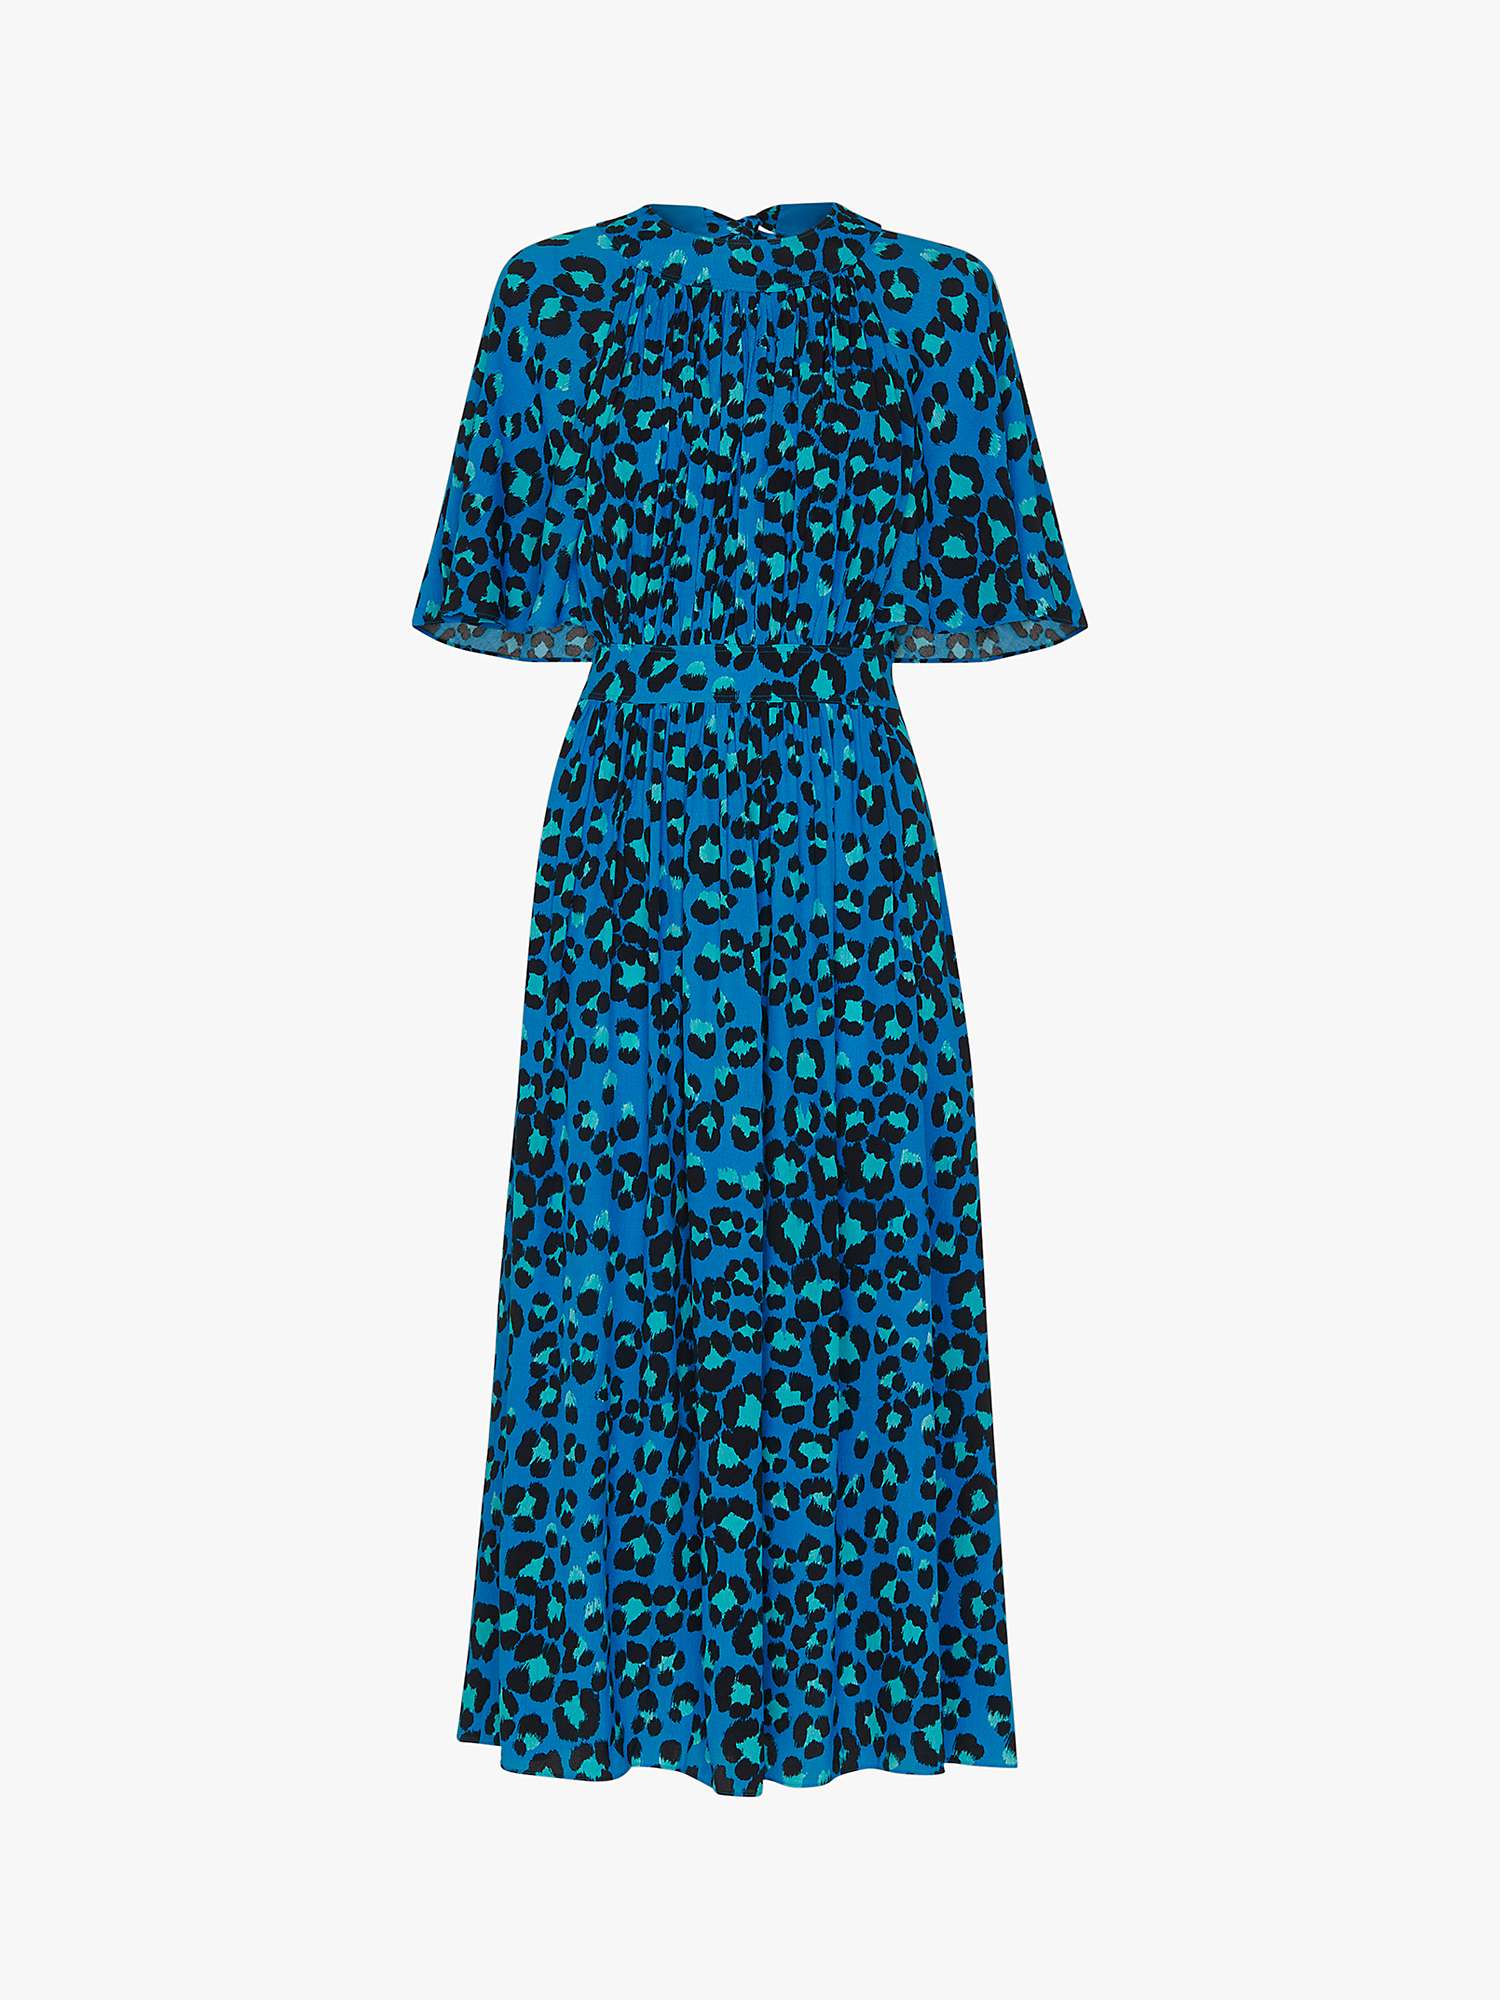 Whistles Amelia Painted Leopard Midi Dress, Blue/Multi at John Lewis ...